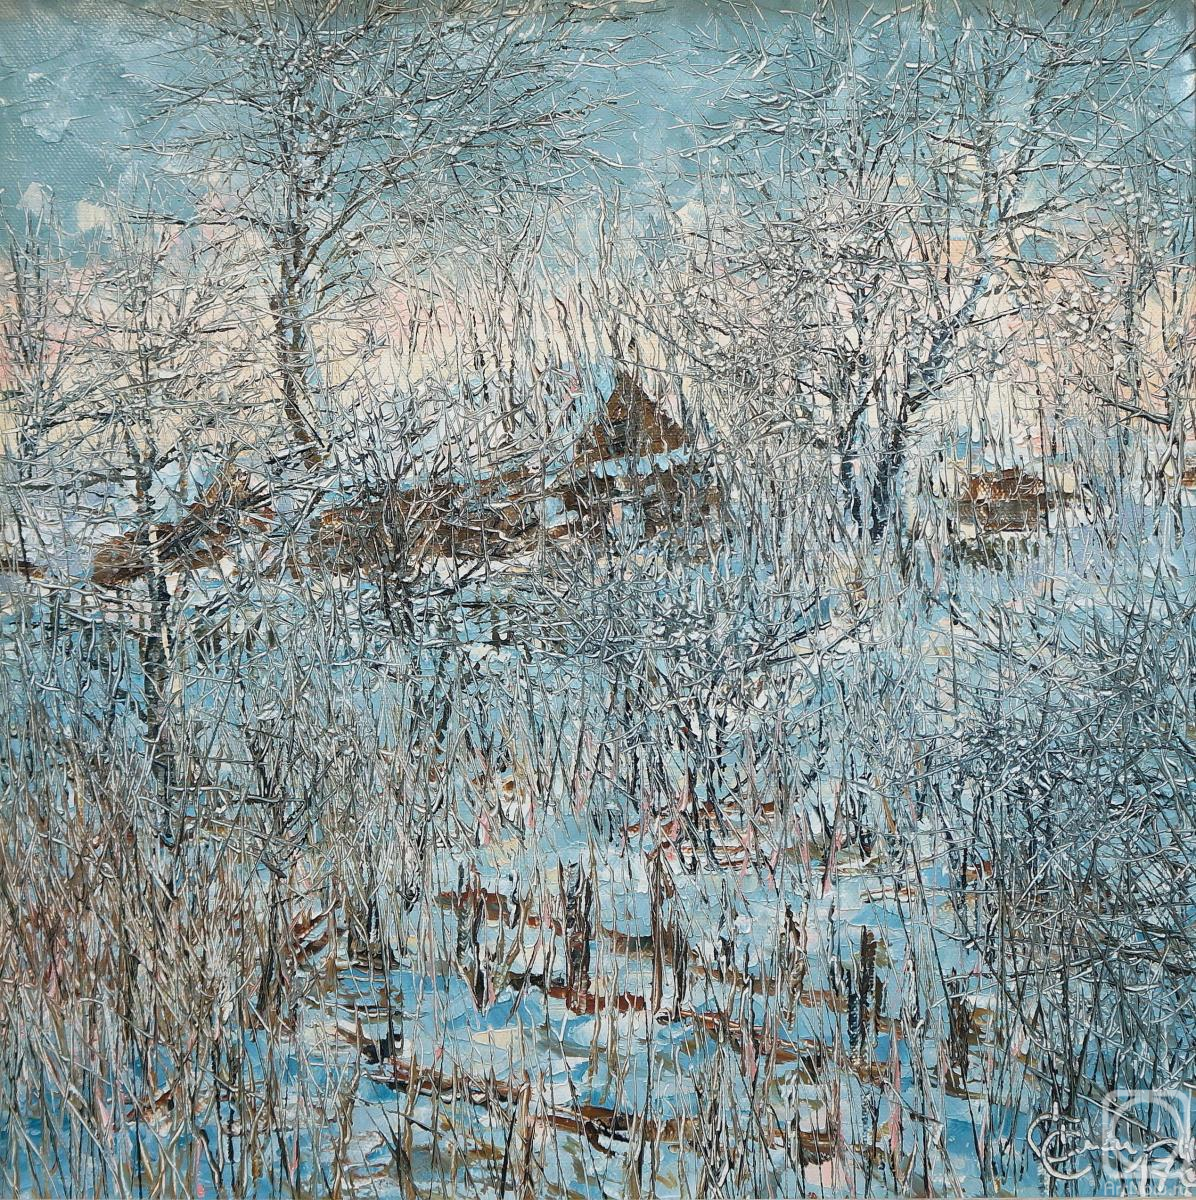 Smirnov Sergey. Village in the snow